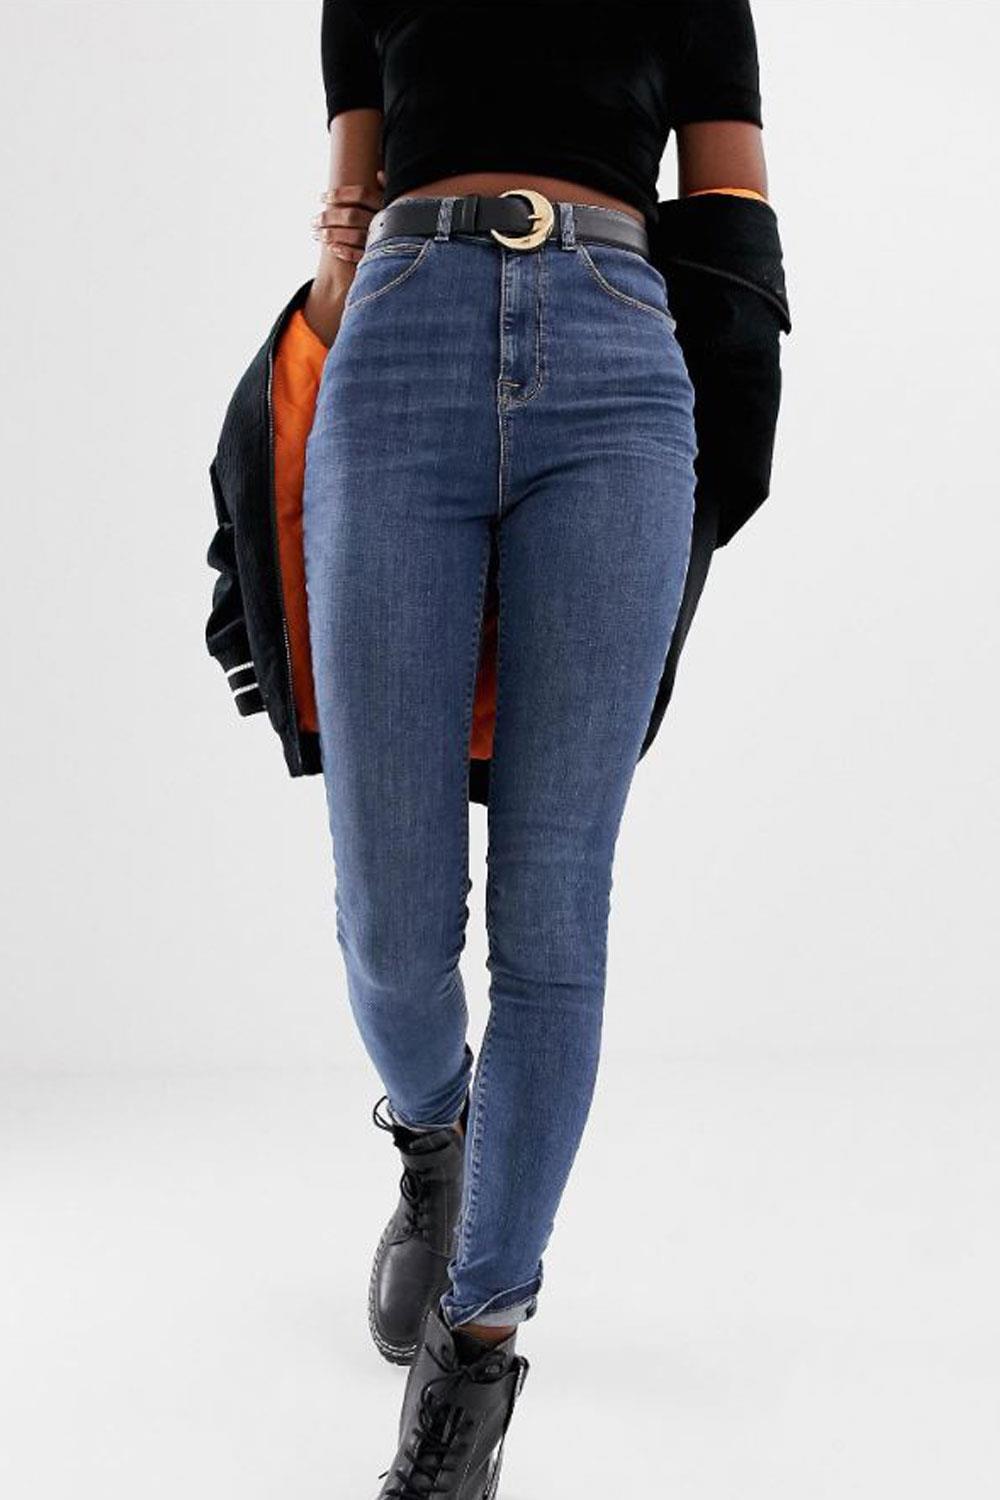 jeans low cost pantalones vaqueros x001 de COLLUSION Tall, 20,99€